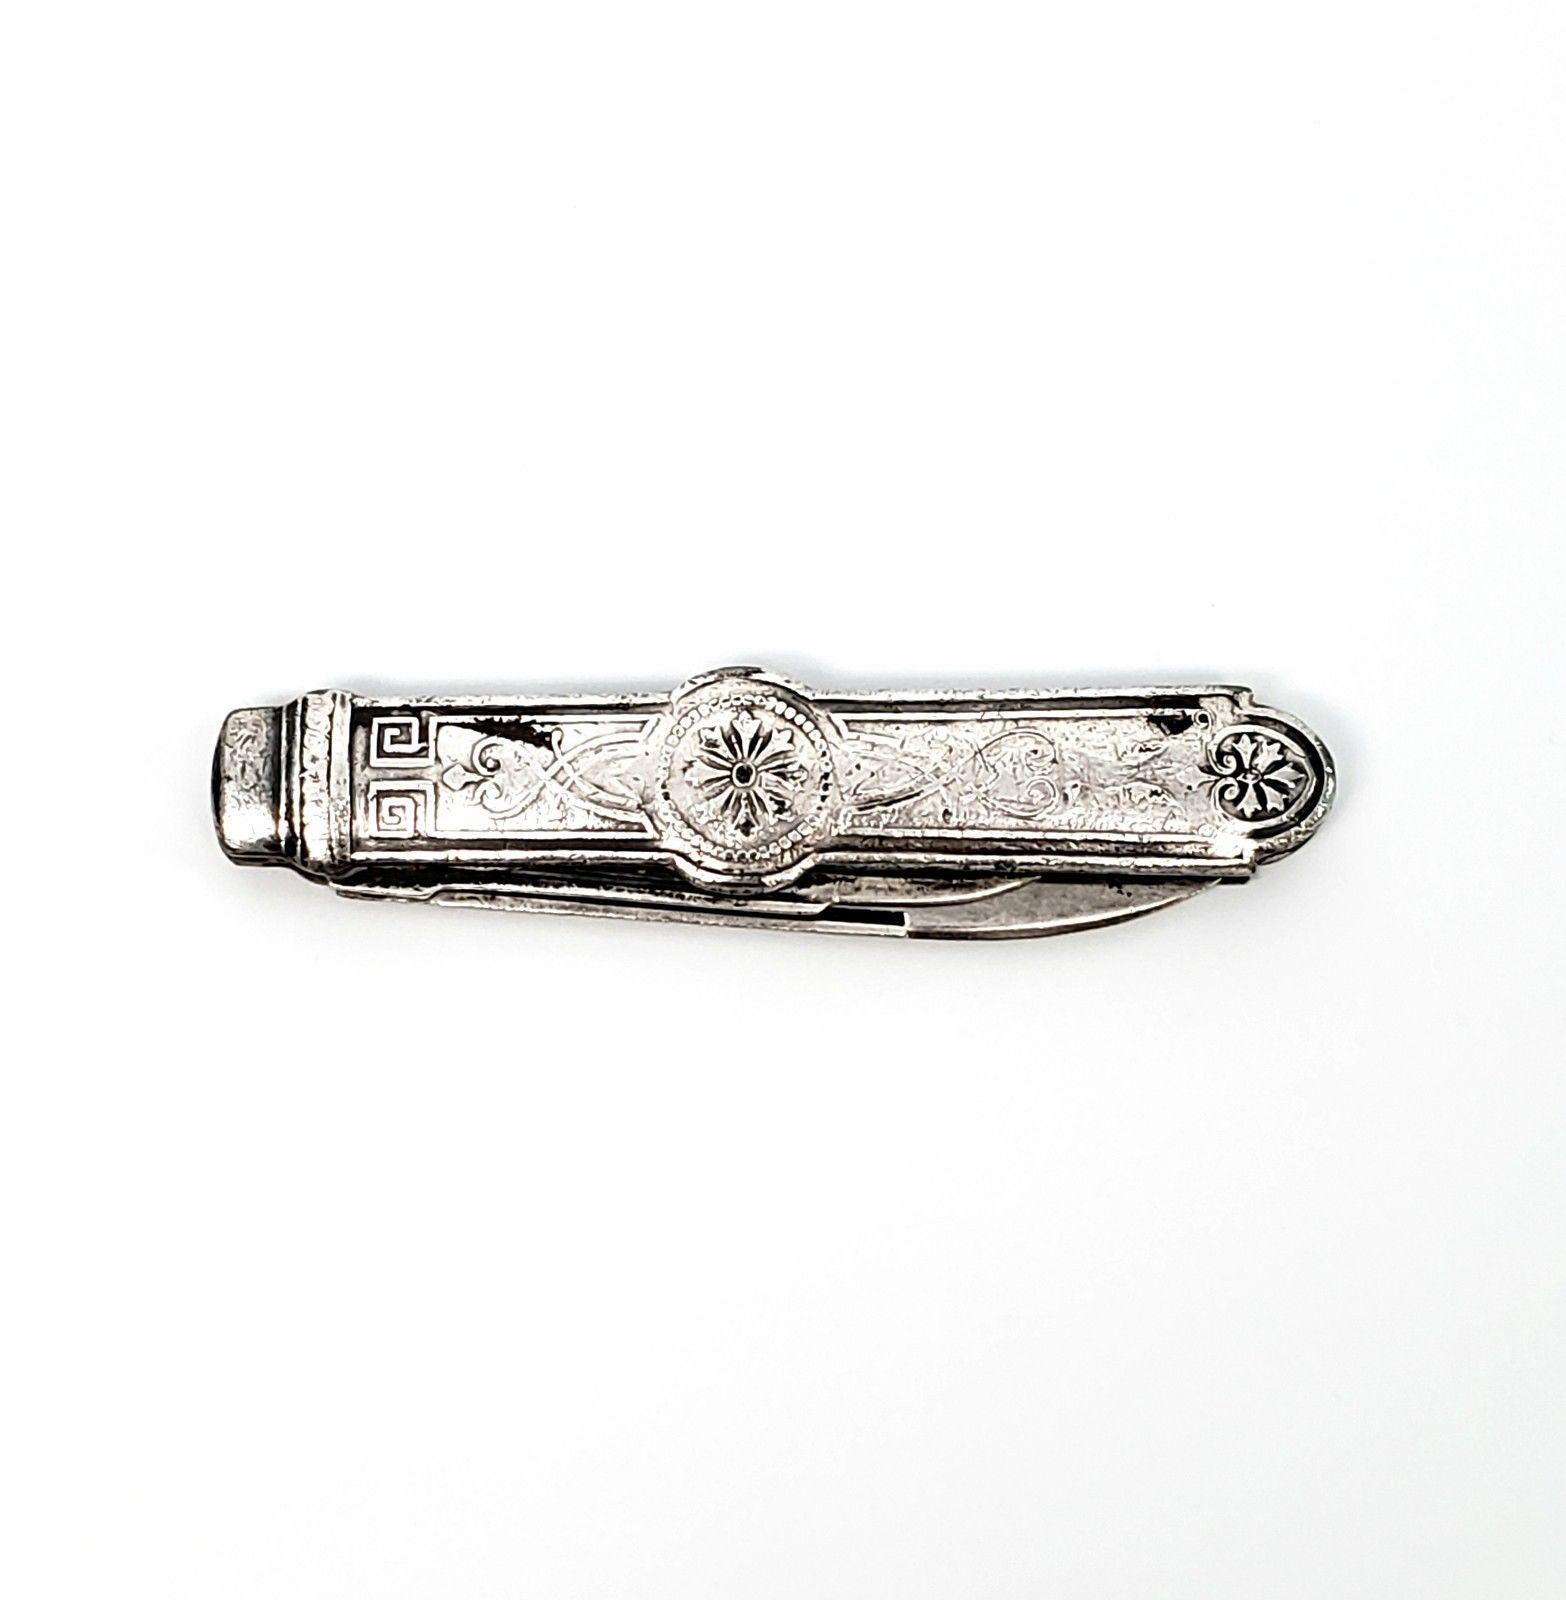 American Antique Gorham Sterling Silver Pocket Knife, No Monogram